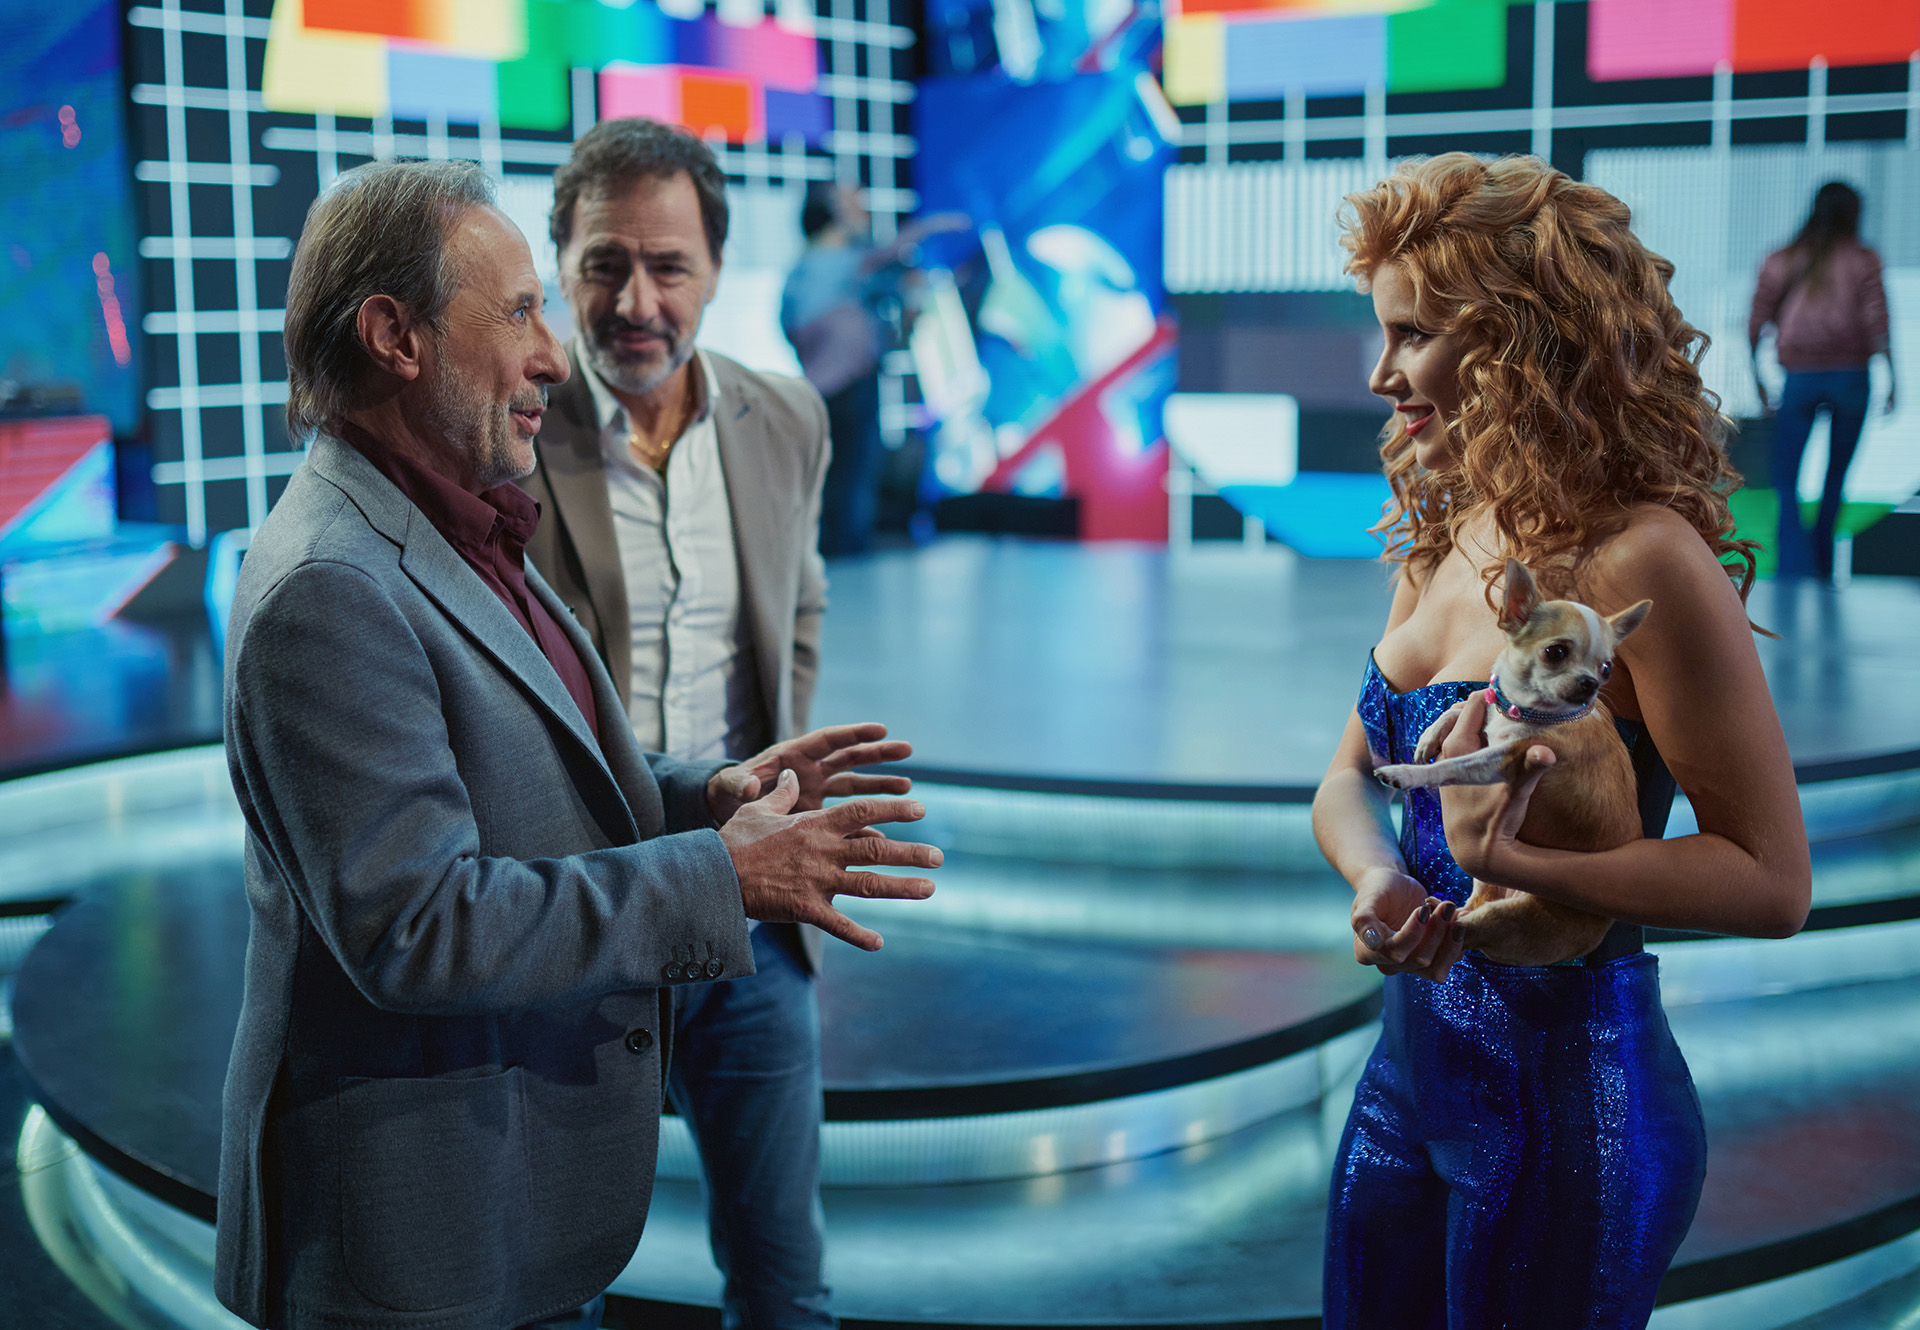 Guillermo Francella, Martín Seefeld y Laurita Fernández, quien ocupará el lugar del meteorólogo caído en desgracia, en una escena de "Granizo". (Netflix)